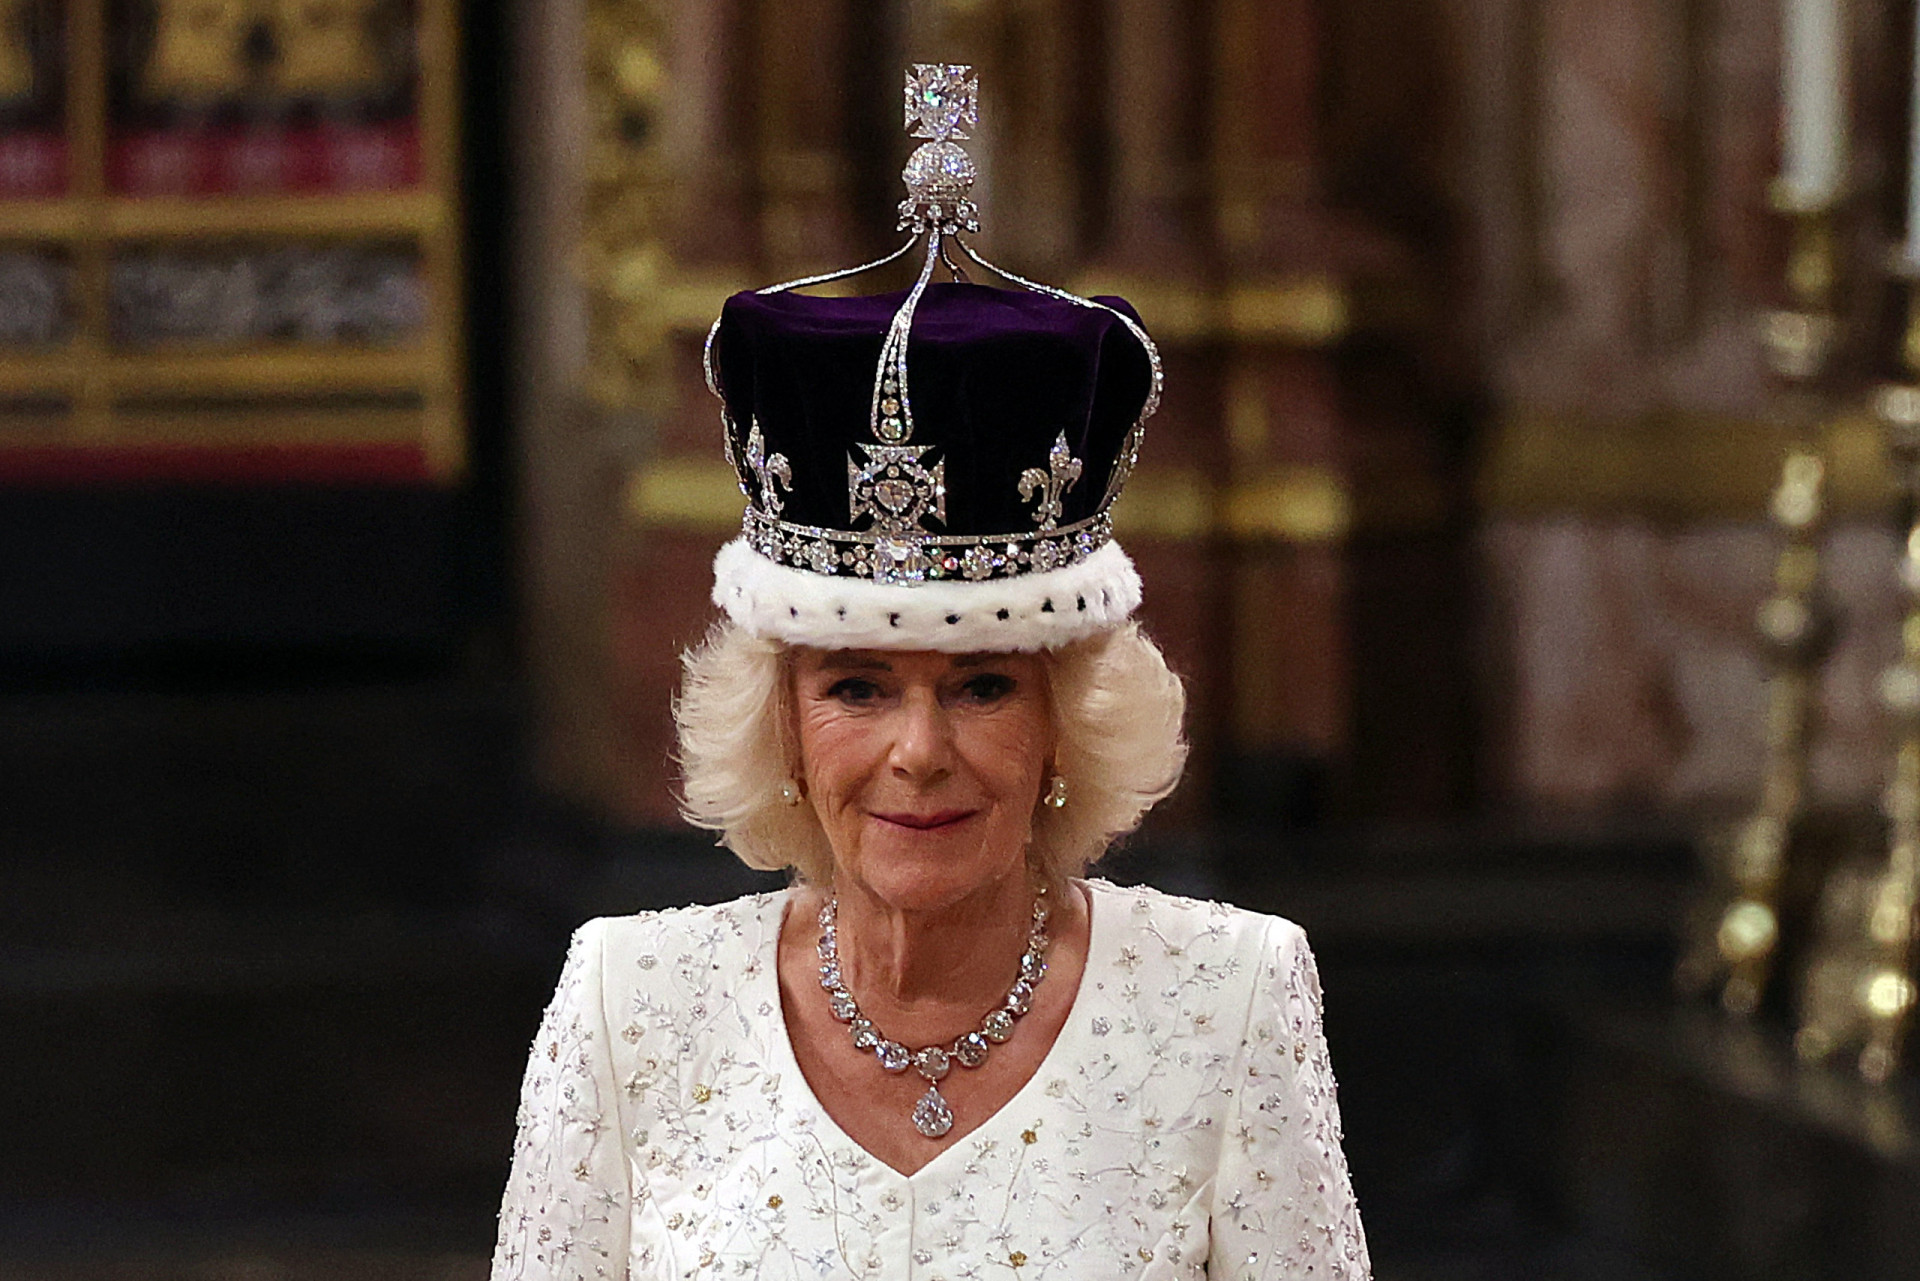 <p>Obwohl Camilla technisch gesehen Königin-Gemahlin ist (weil sie mit dem Herrscher verheiratet ist), wurde sie Königin Camilla, als sie am 6. Mai 2023 mit der Krone von Königin Mary gekrönt wurde.</p><p>Sie können auch mögen:<a href="https://de.starsinsider.com/n/324792?utm_source=msn.com&utm_medium=display&utm_campaign=referral_description&utm_content=552805"> Leonardo DiCaprio: All seine heißen Ex-Freundinnen</a></p>